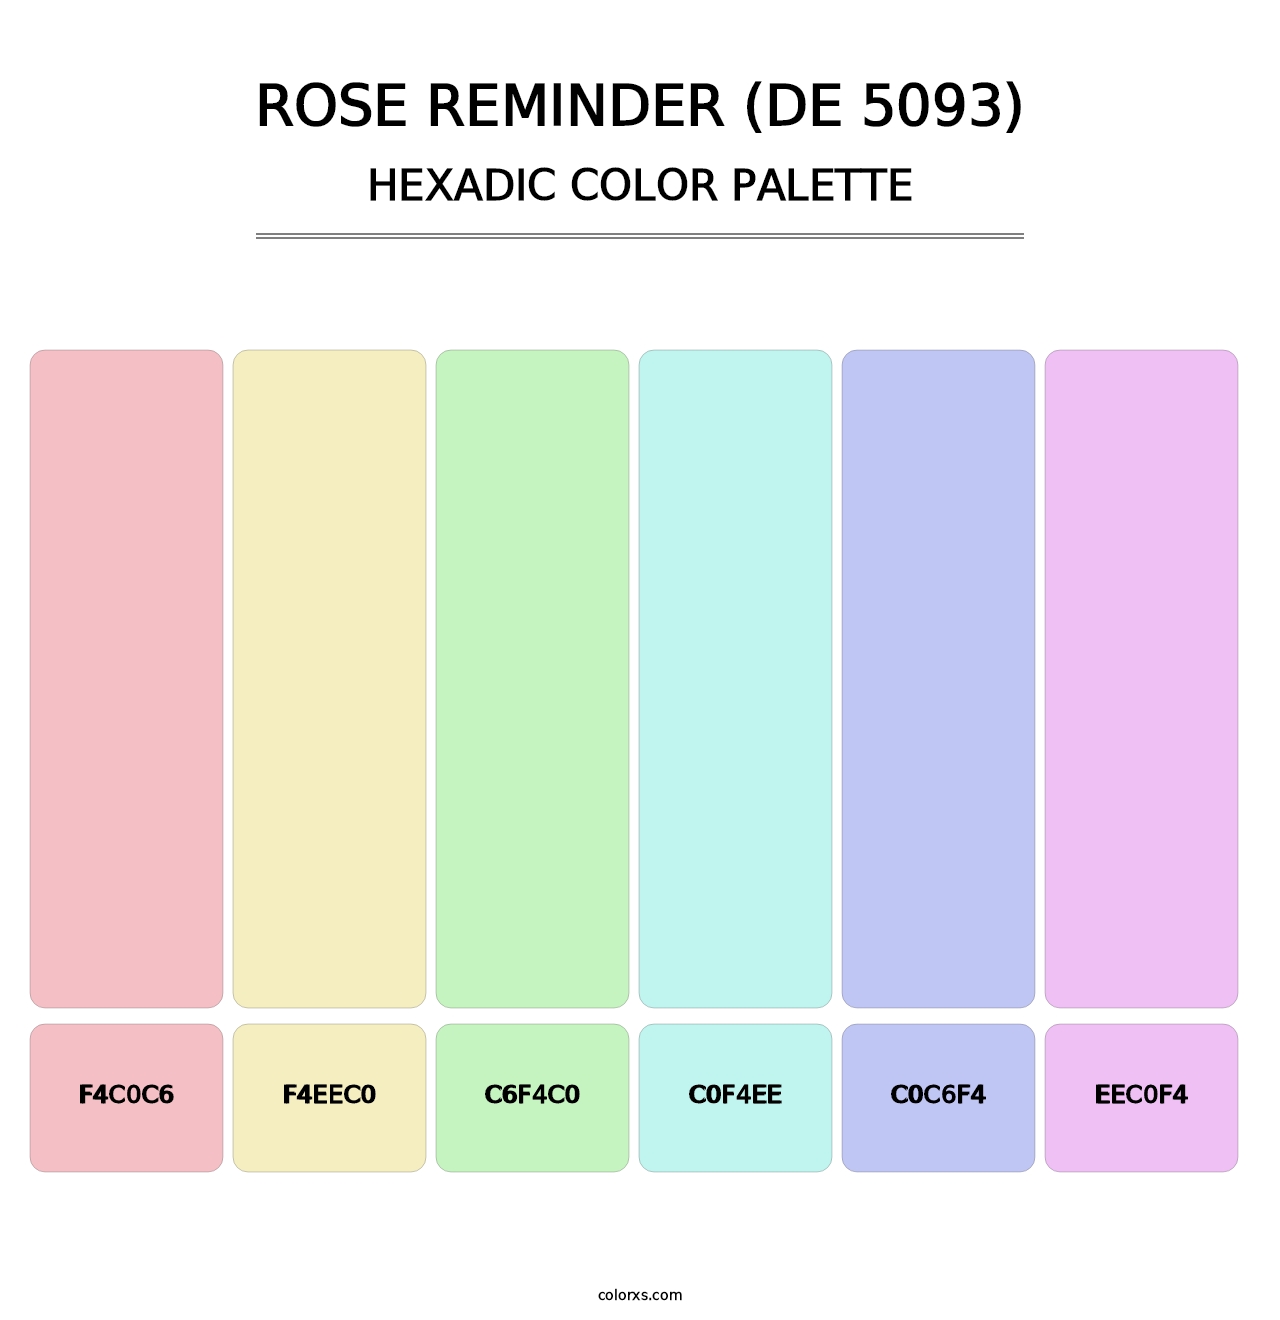 Rose Reminder (DE 5093) - Hexadic Color Palette